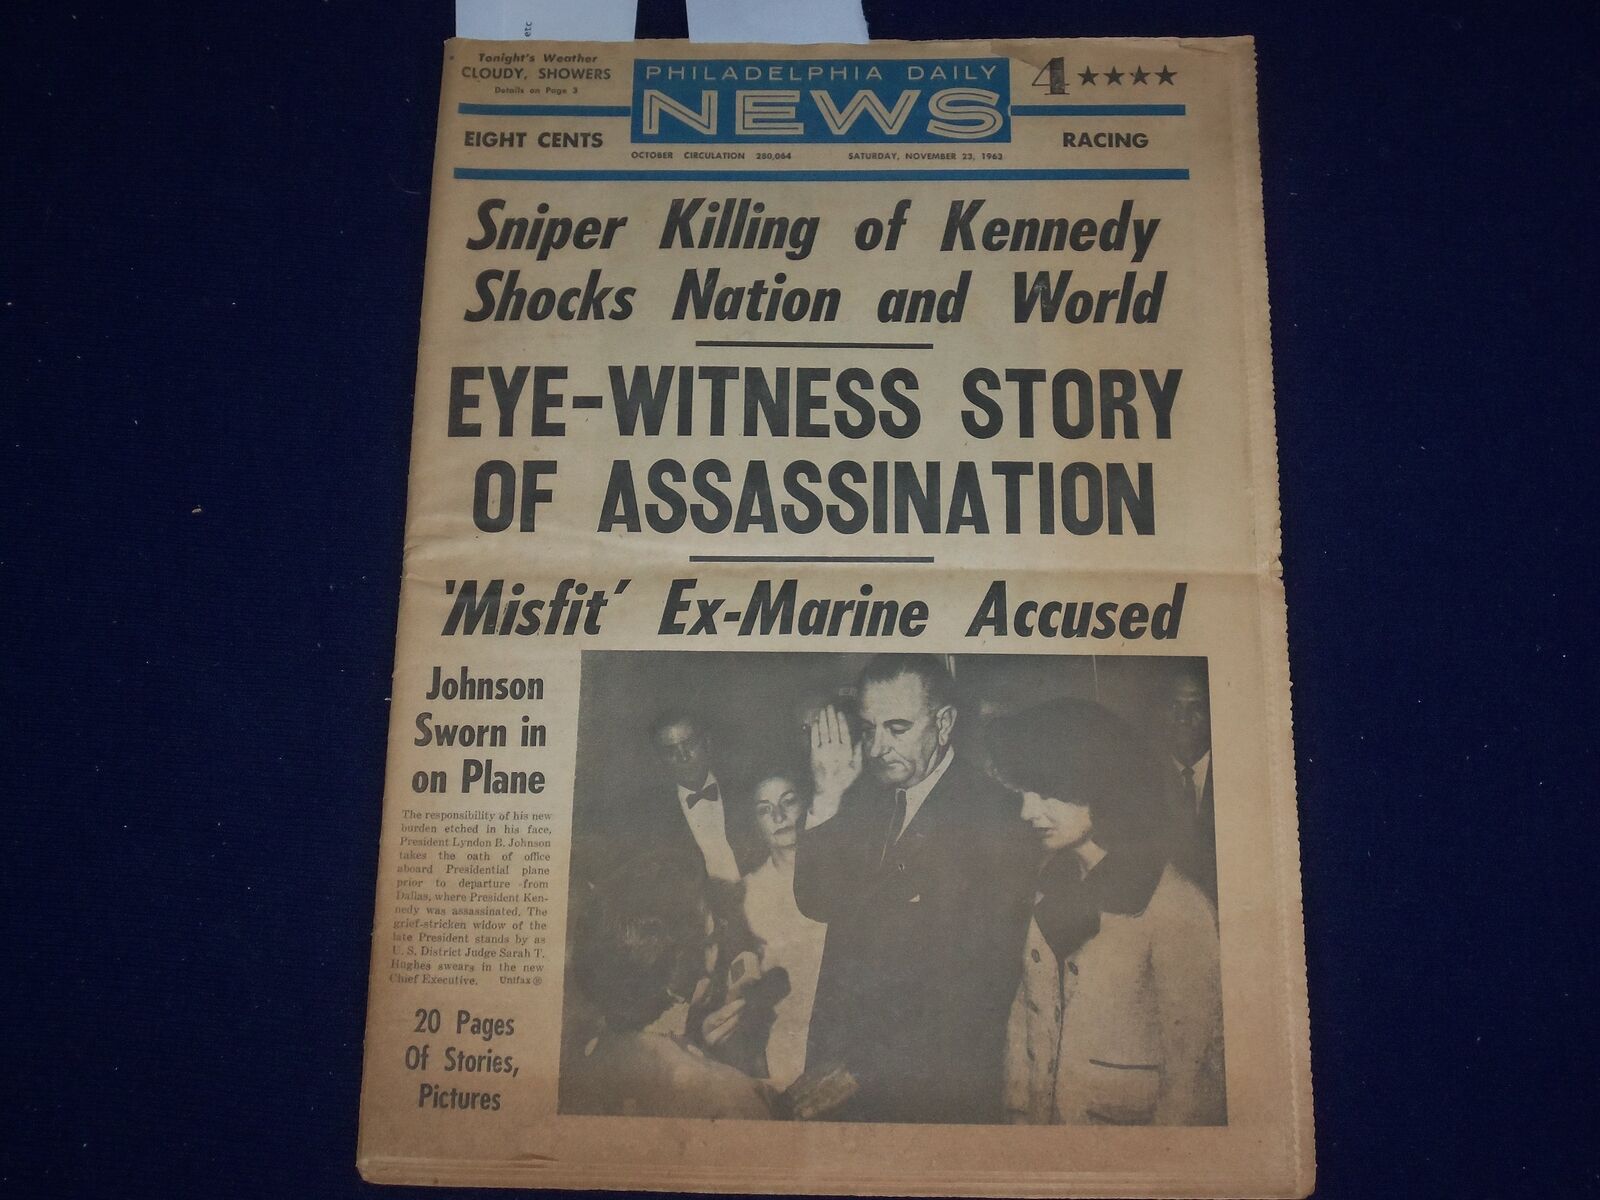 1963 NOVEMBER 23 PHILADELPHIA DAILY NEWS - JFK ASSASSINATED - NP 2970